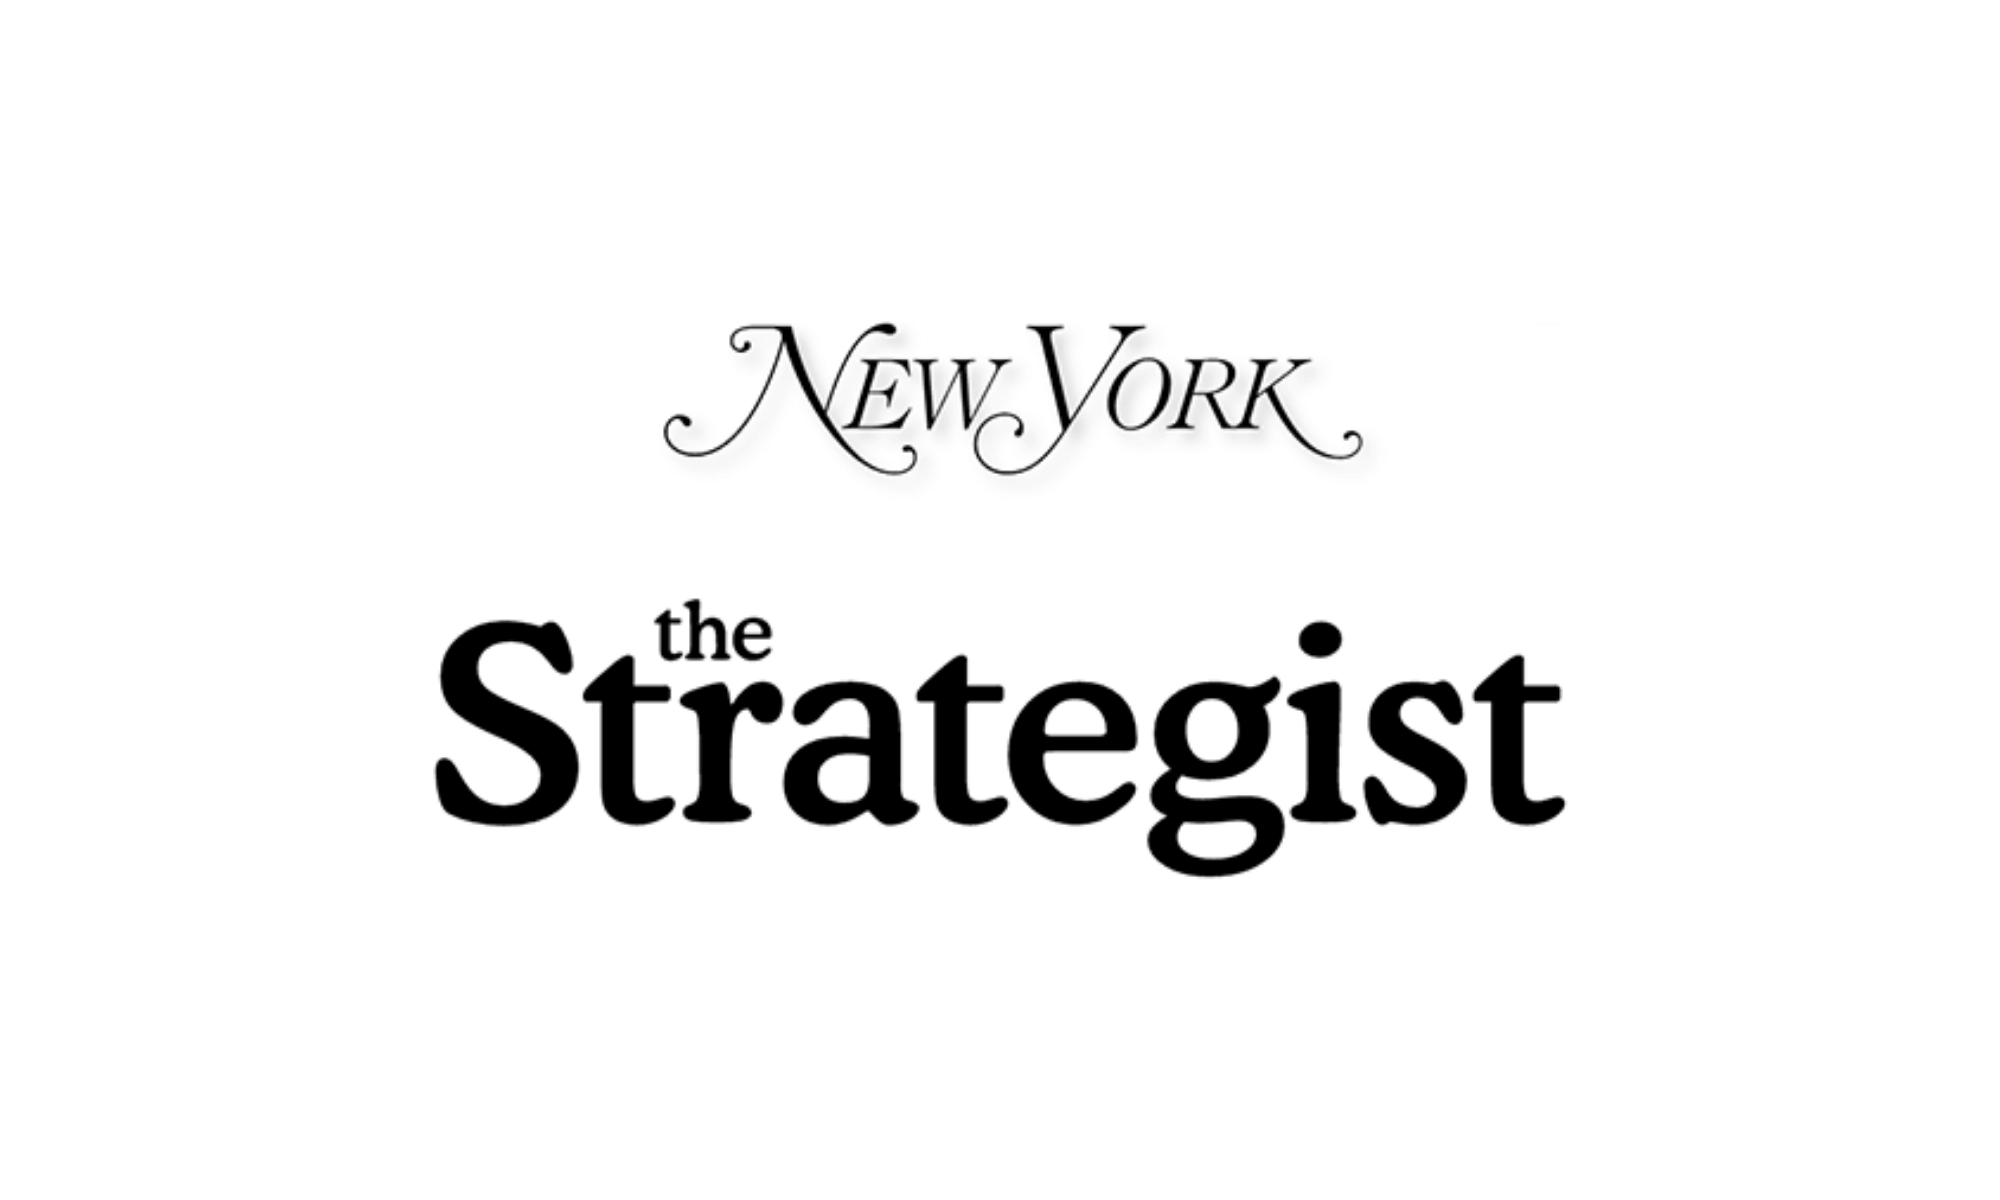 The Strategist (New York Magazine)